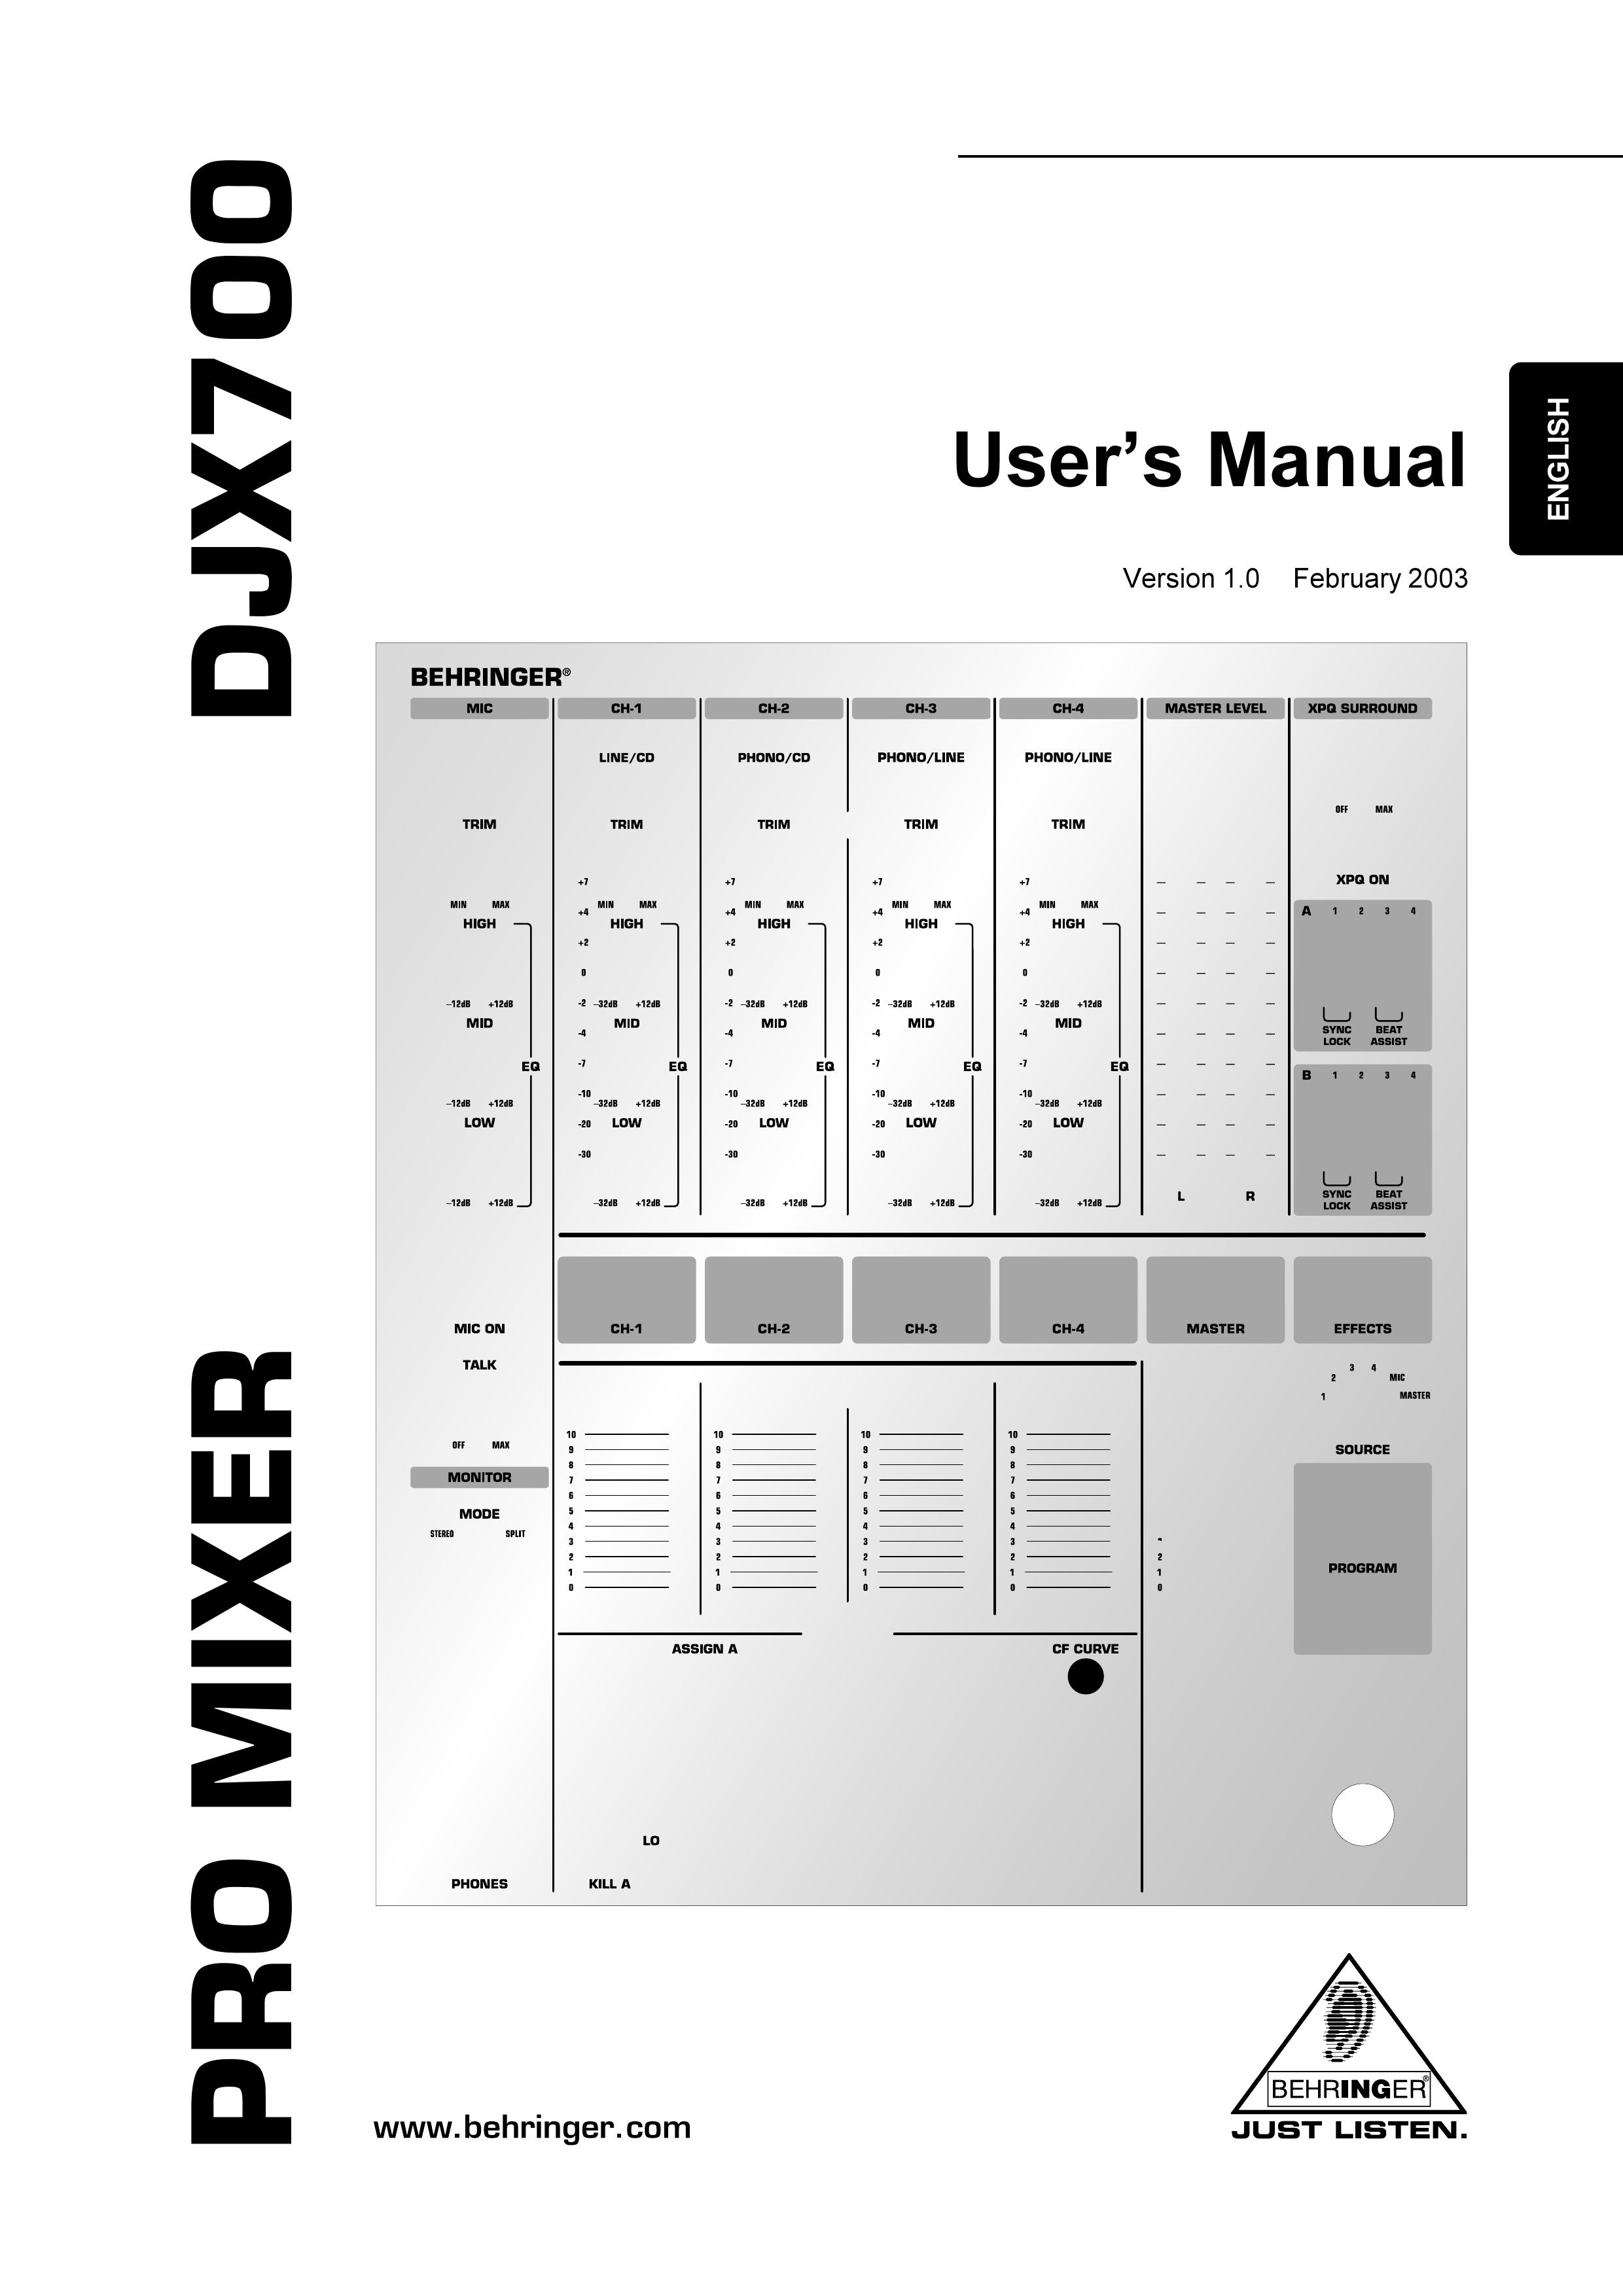 Behringer DJX700 Musical Instrument User Manual